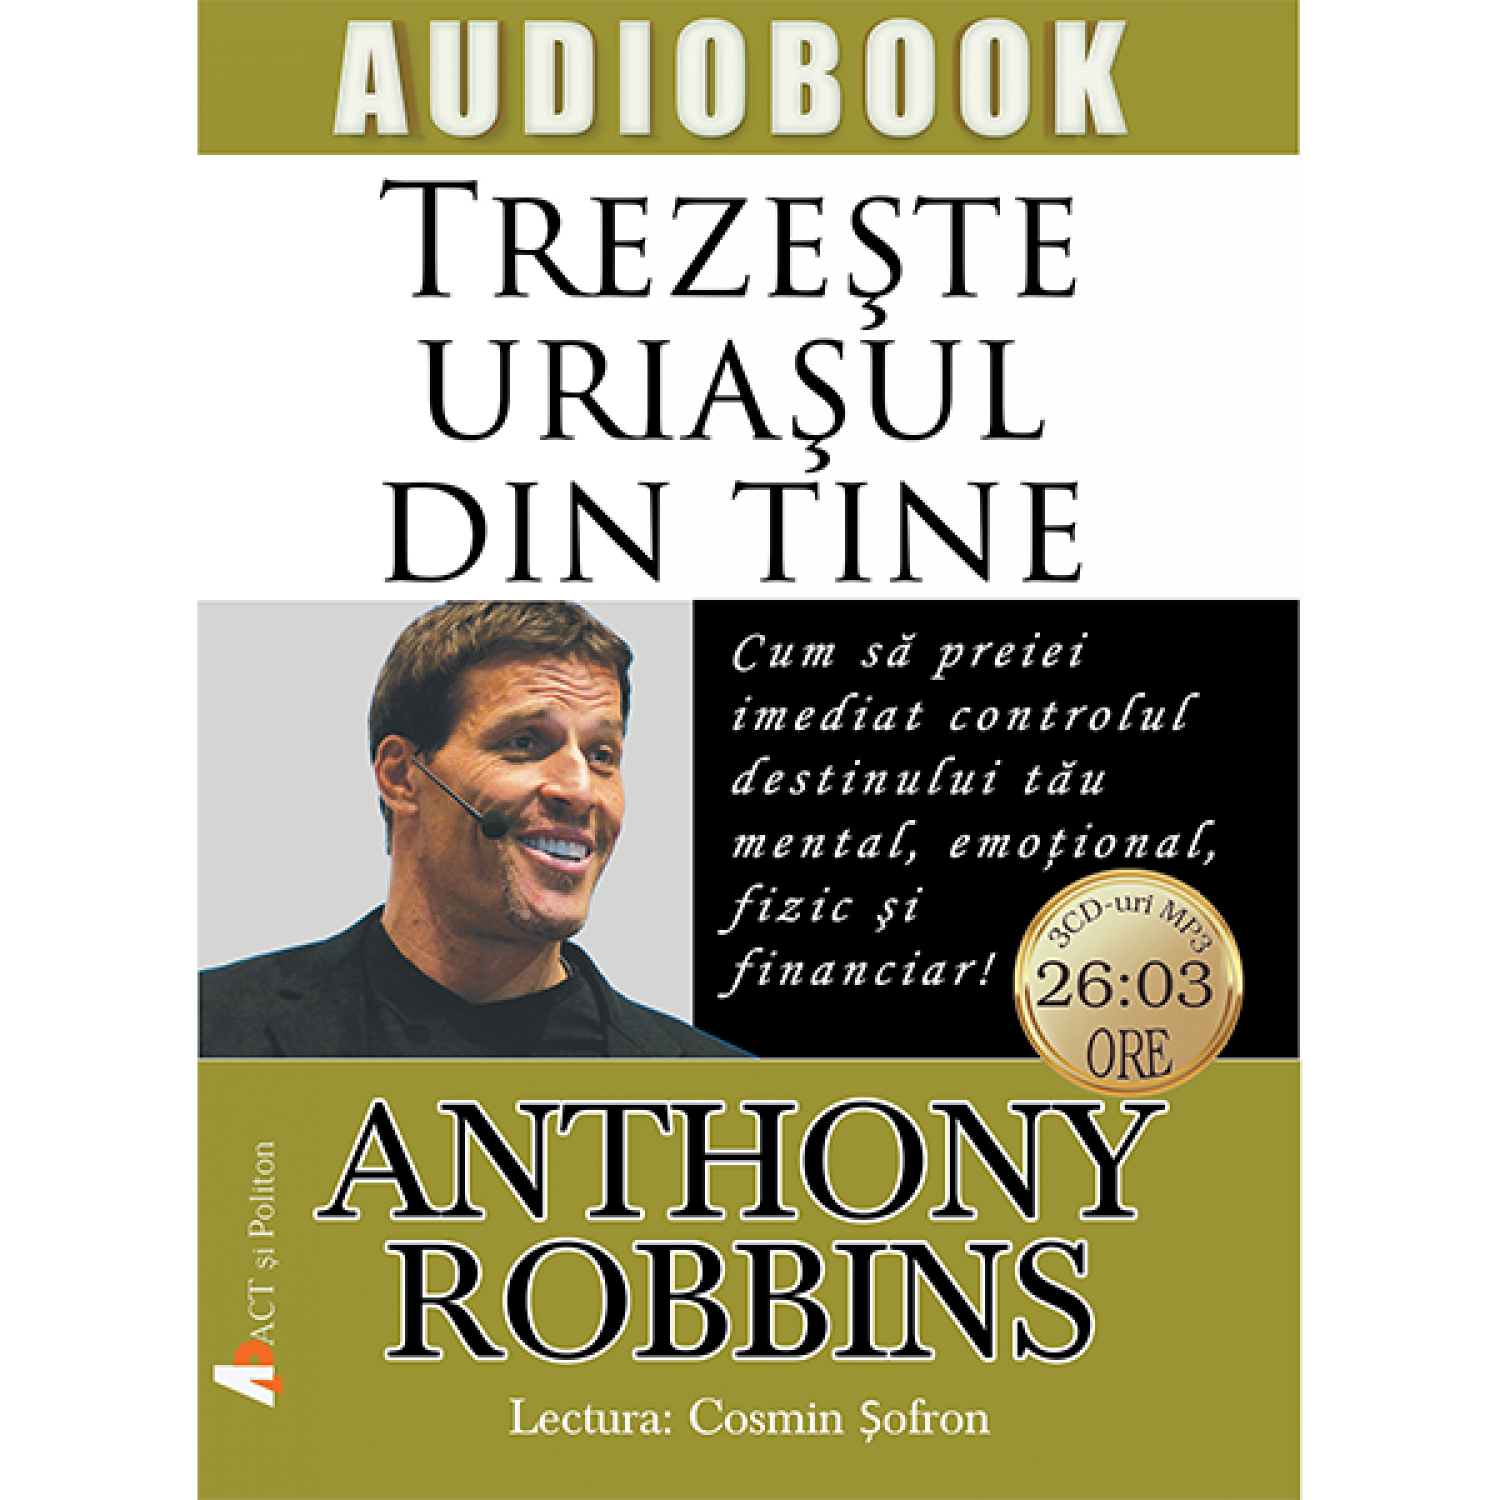 Trezeste uriasul din tine – Audiobook | Anthony Robbins Anthony Robbins